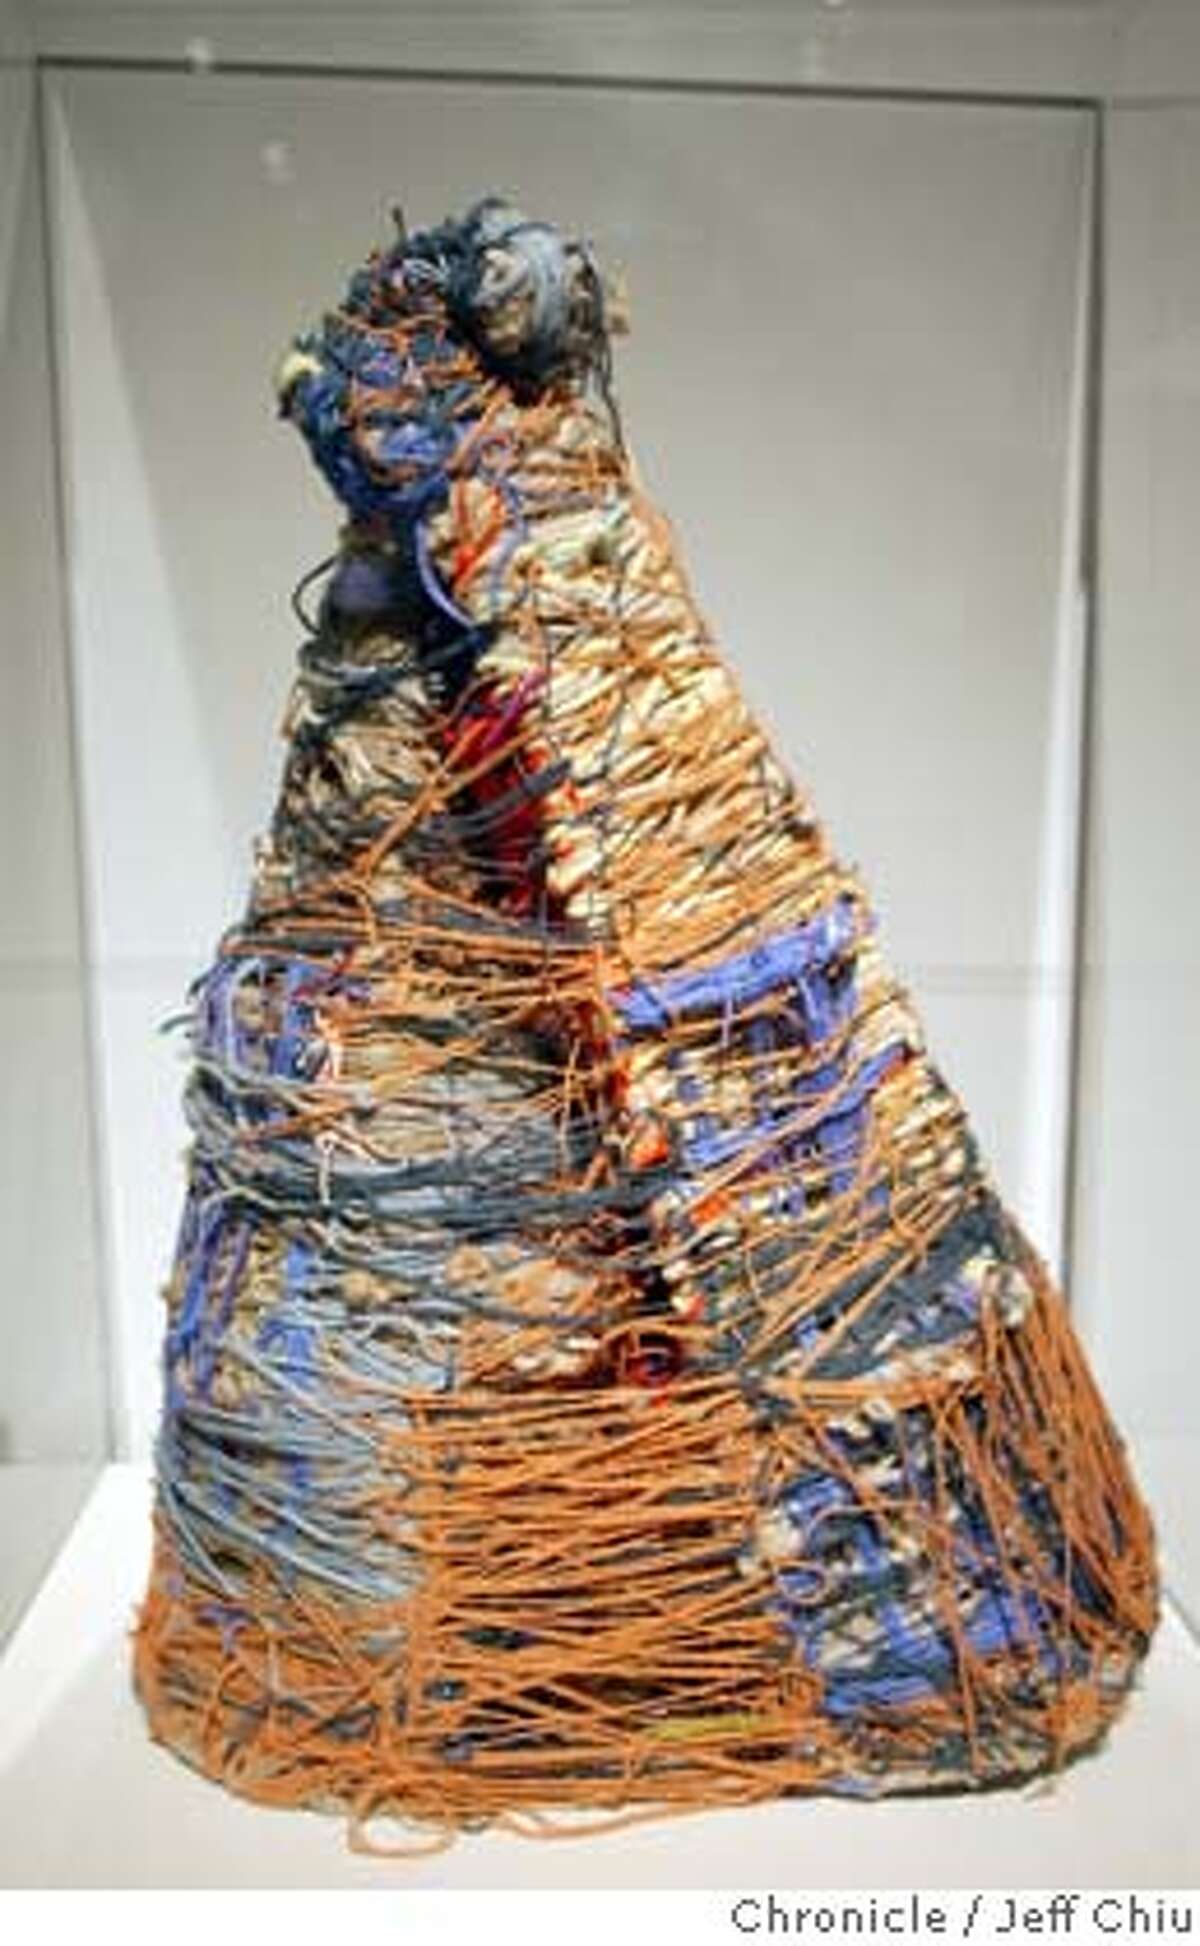 Judith Scott renowned for her fiber art sculptures